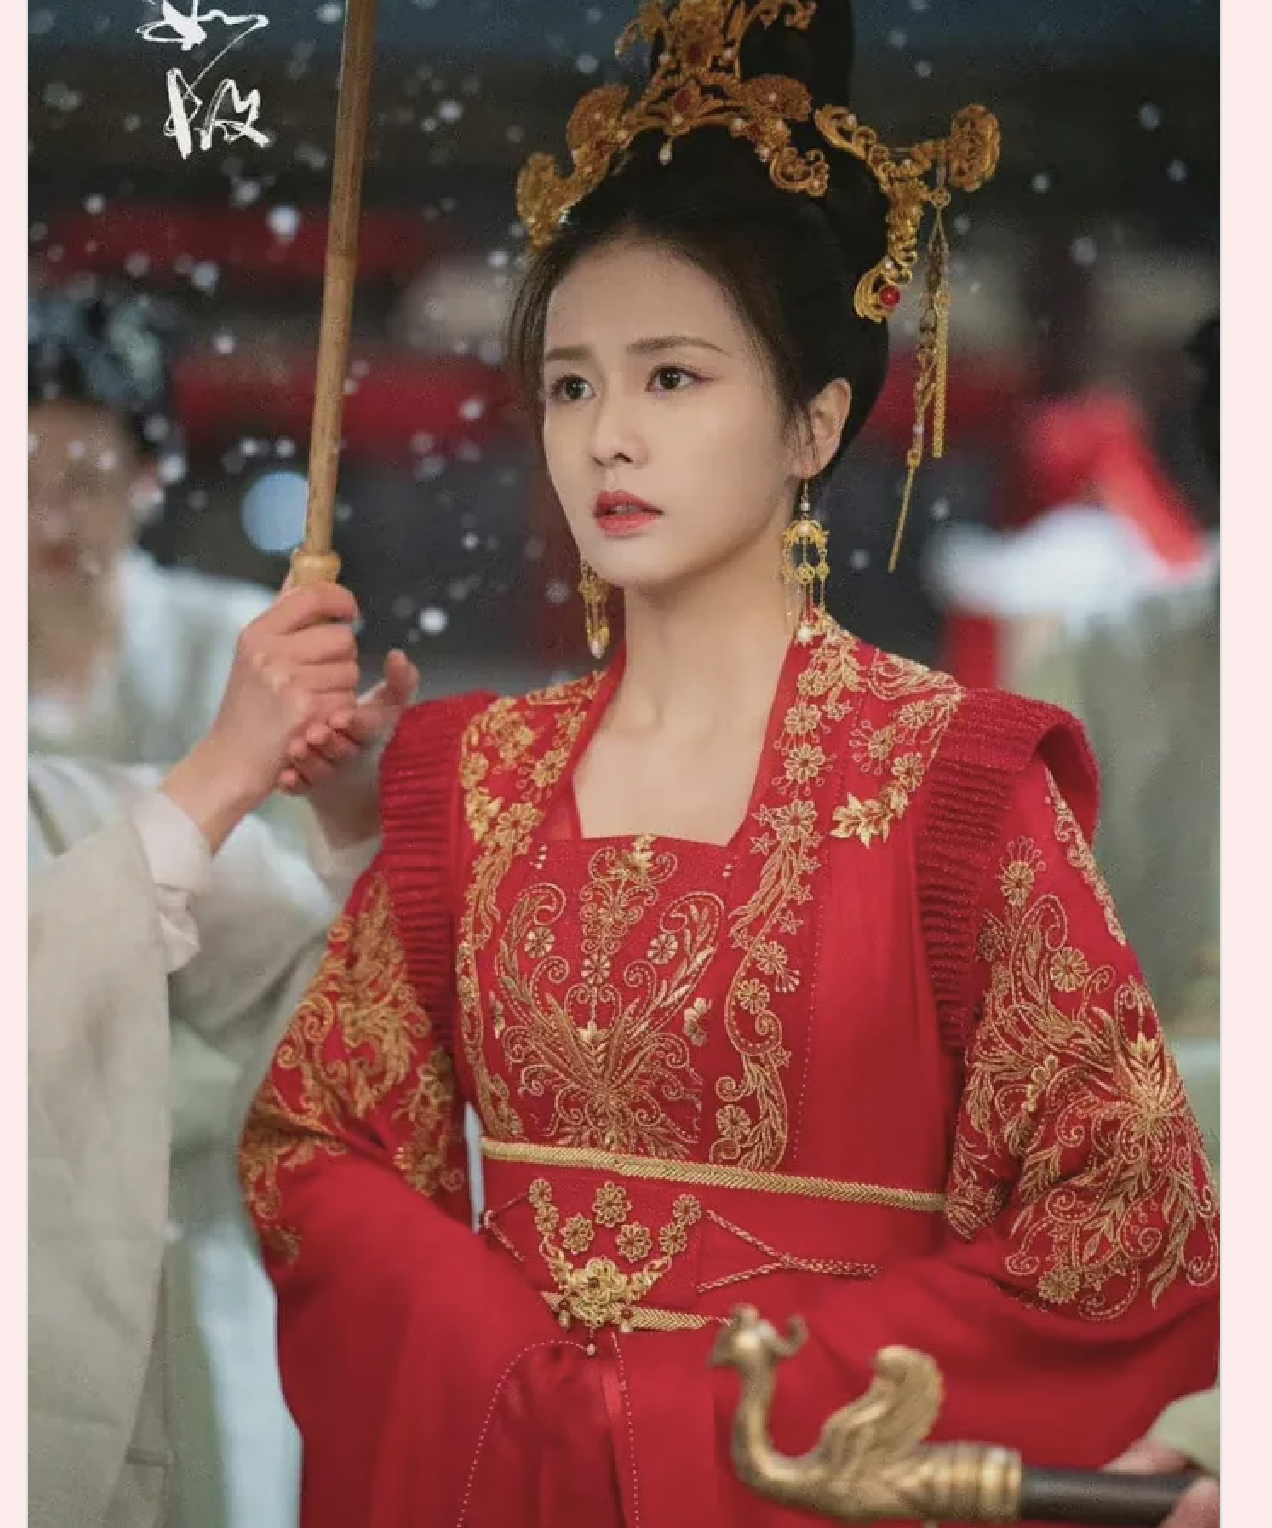 Khoảnh khắc nữ diễn viên mặc đồ đỏ, leo lên thành cao giữa màn tuyết trắng đã viral khắp mạng xã hội, khiến An và nhiều khán giả vốn không mấy quan tâm đến Bạch Lộc, nay phải nhớ mặt, nhớ tên.